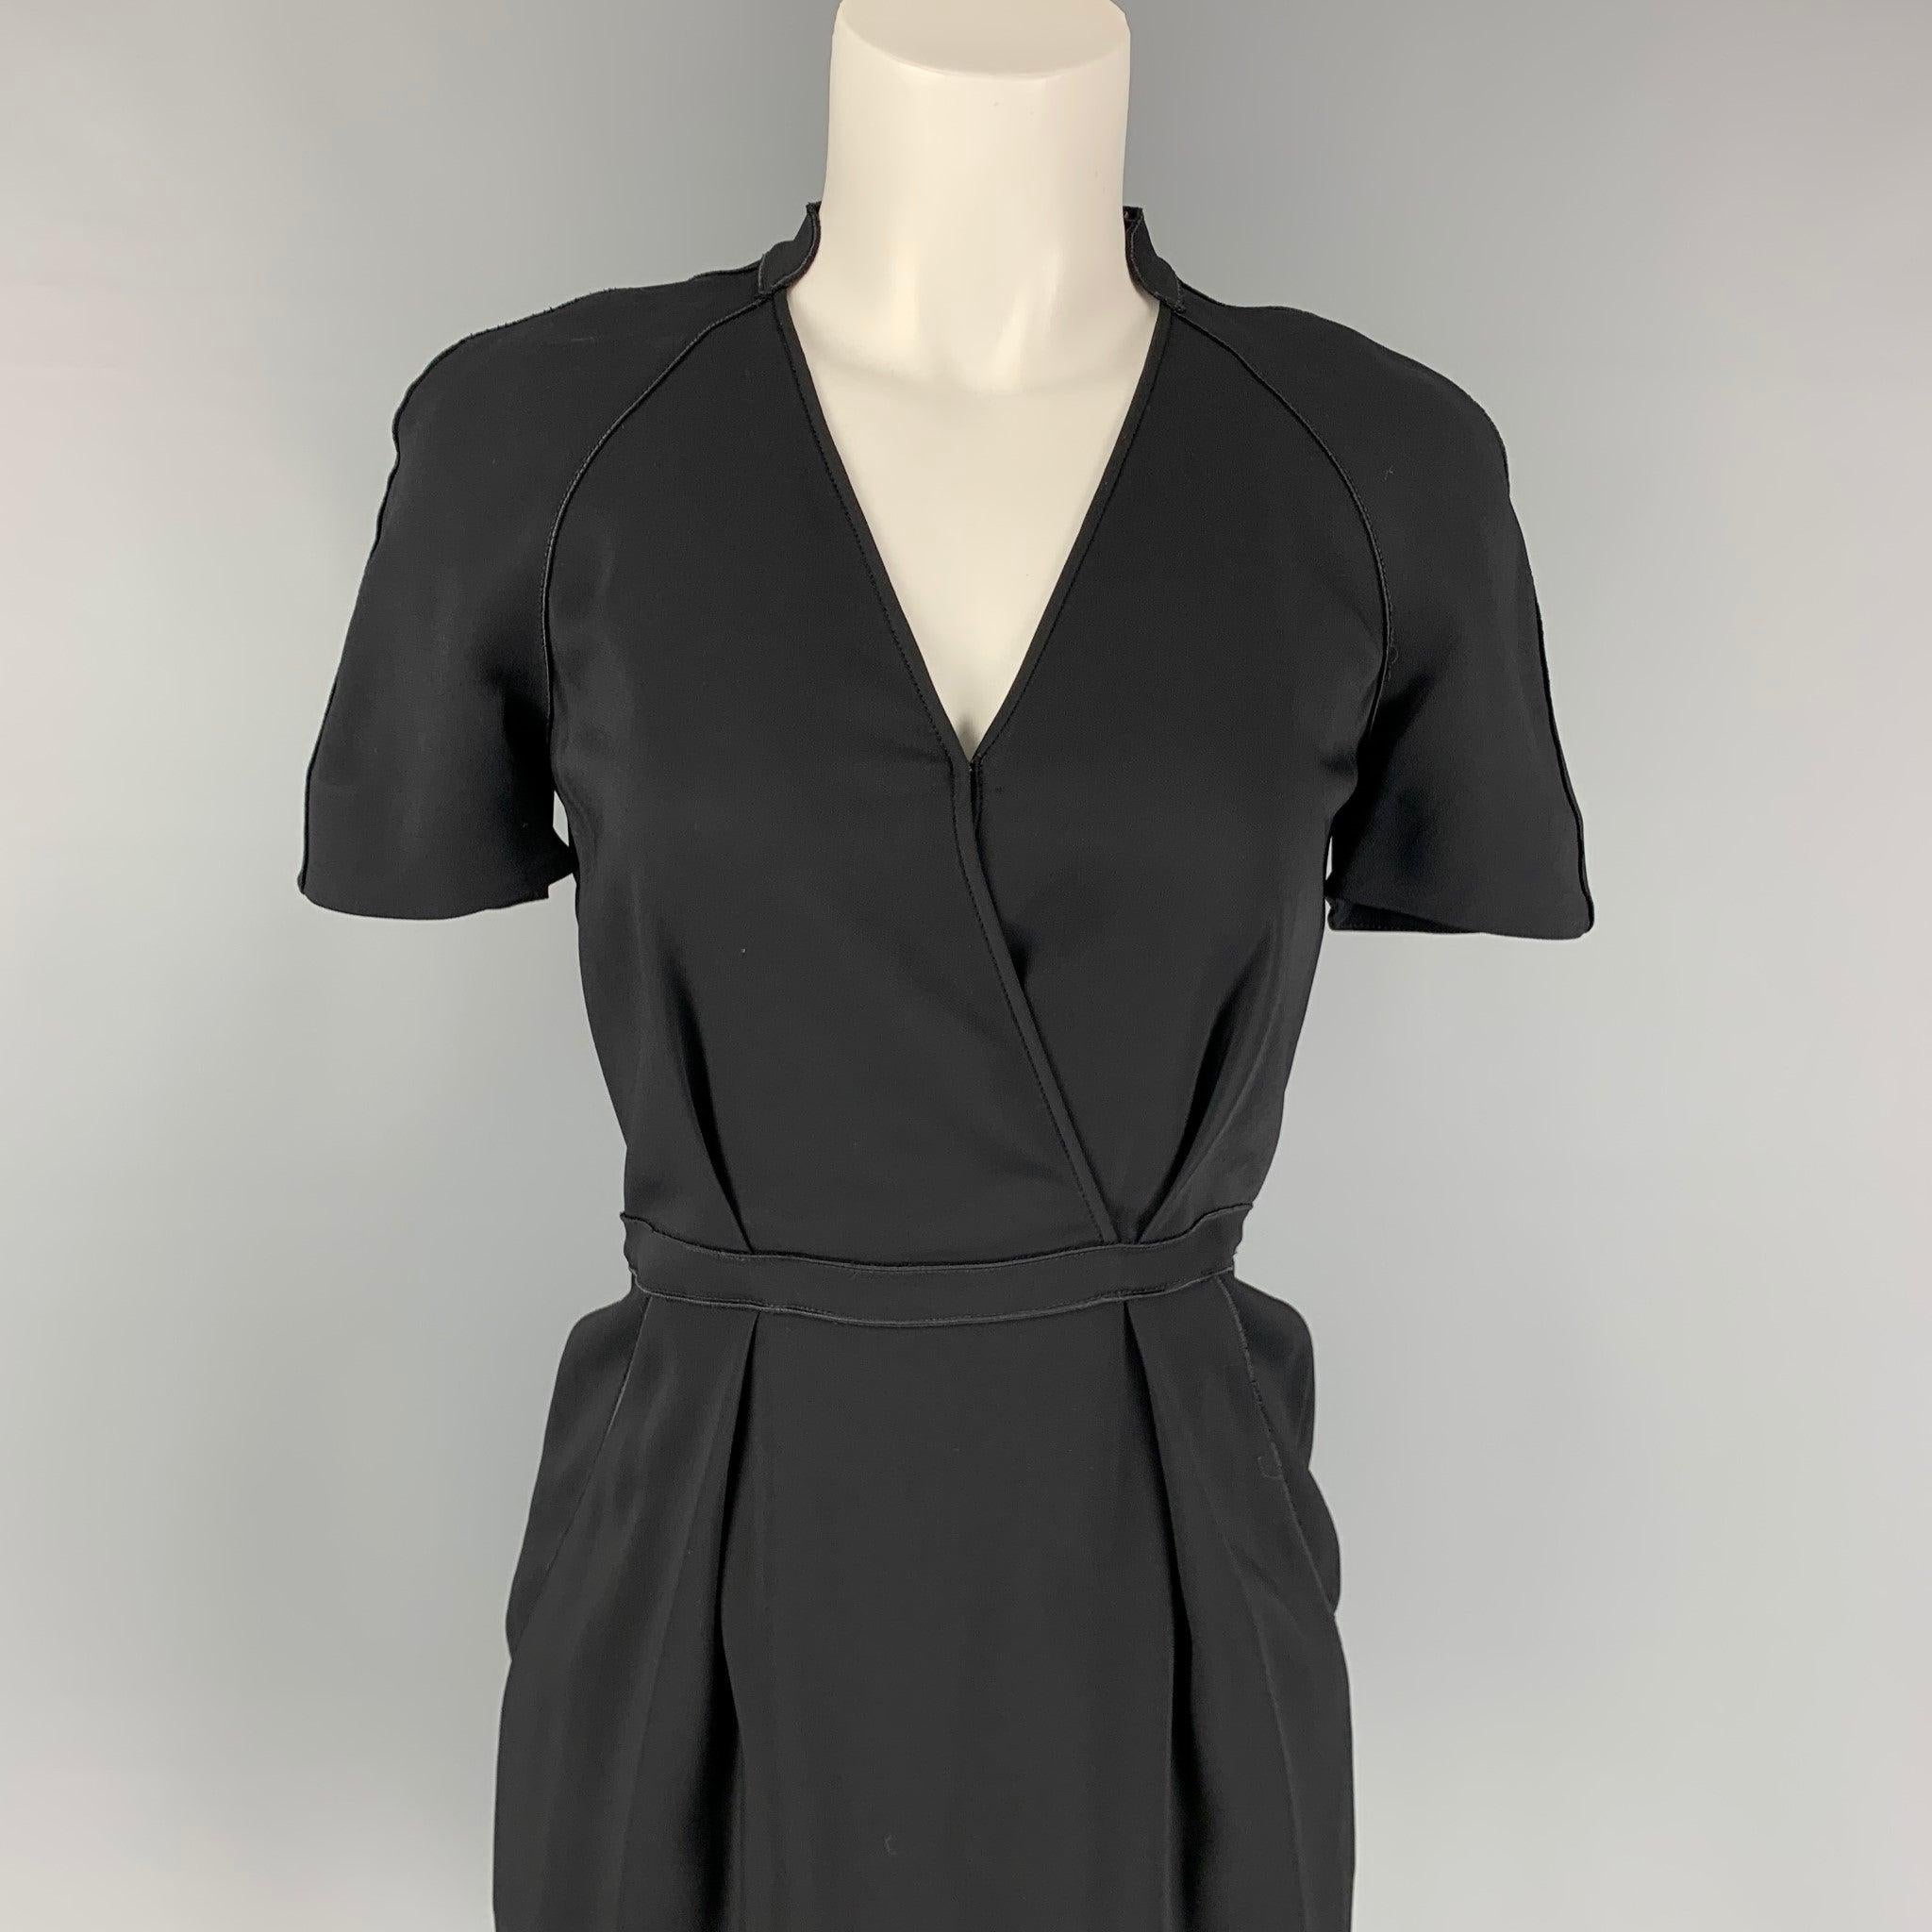 STELLA McCARTNEY Kleid aus schwarzer Viskose mit folgenden Eigenschaften: plissierter Schnitt, A-Linie, geschlitzte Taschen, kurze Ärmel und Reißverschluss hinten.
Sehr gut
Gebrauchtes Zustand. 

Markiert:   38 

Abmessungen: 
 
Schultern: 16,5 Zoll